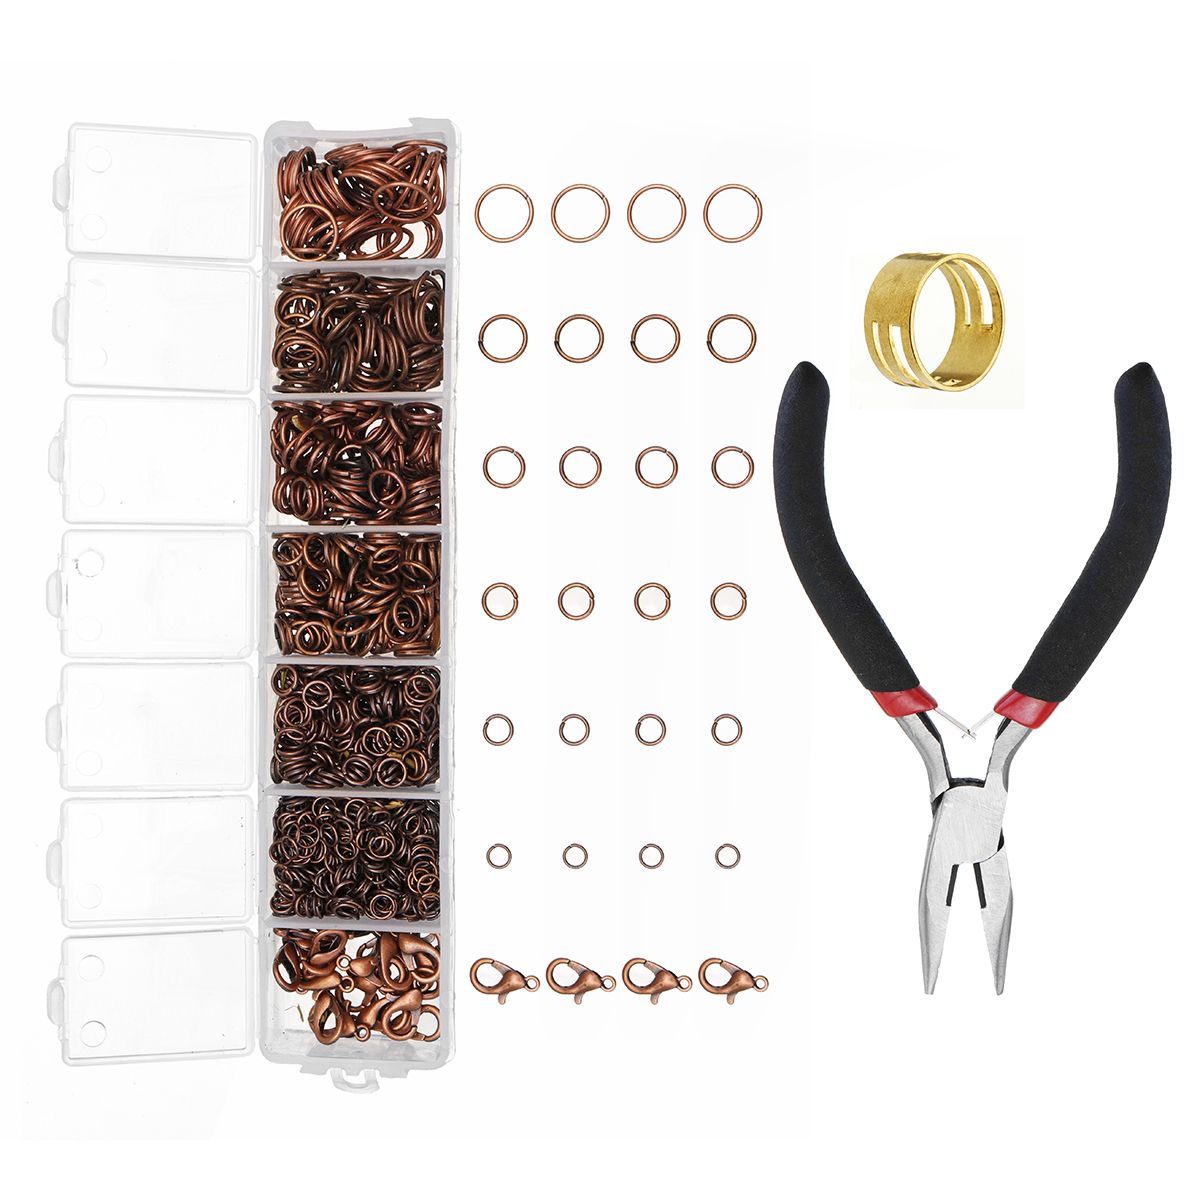 DIY-Jewelry-Making-Findings-Kit-Metal-Jump-Rings-Lobster-Clasp-Pliers-Tool-Set-1420893